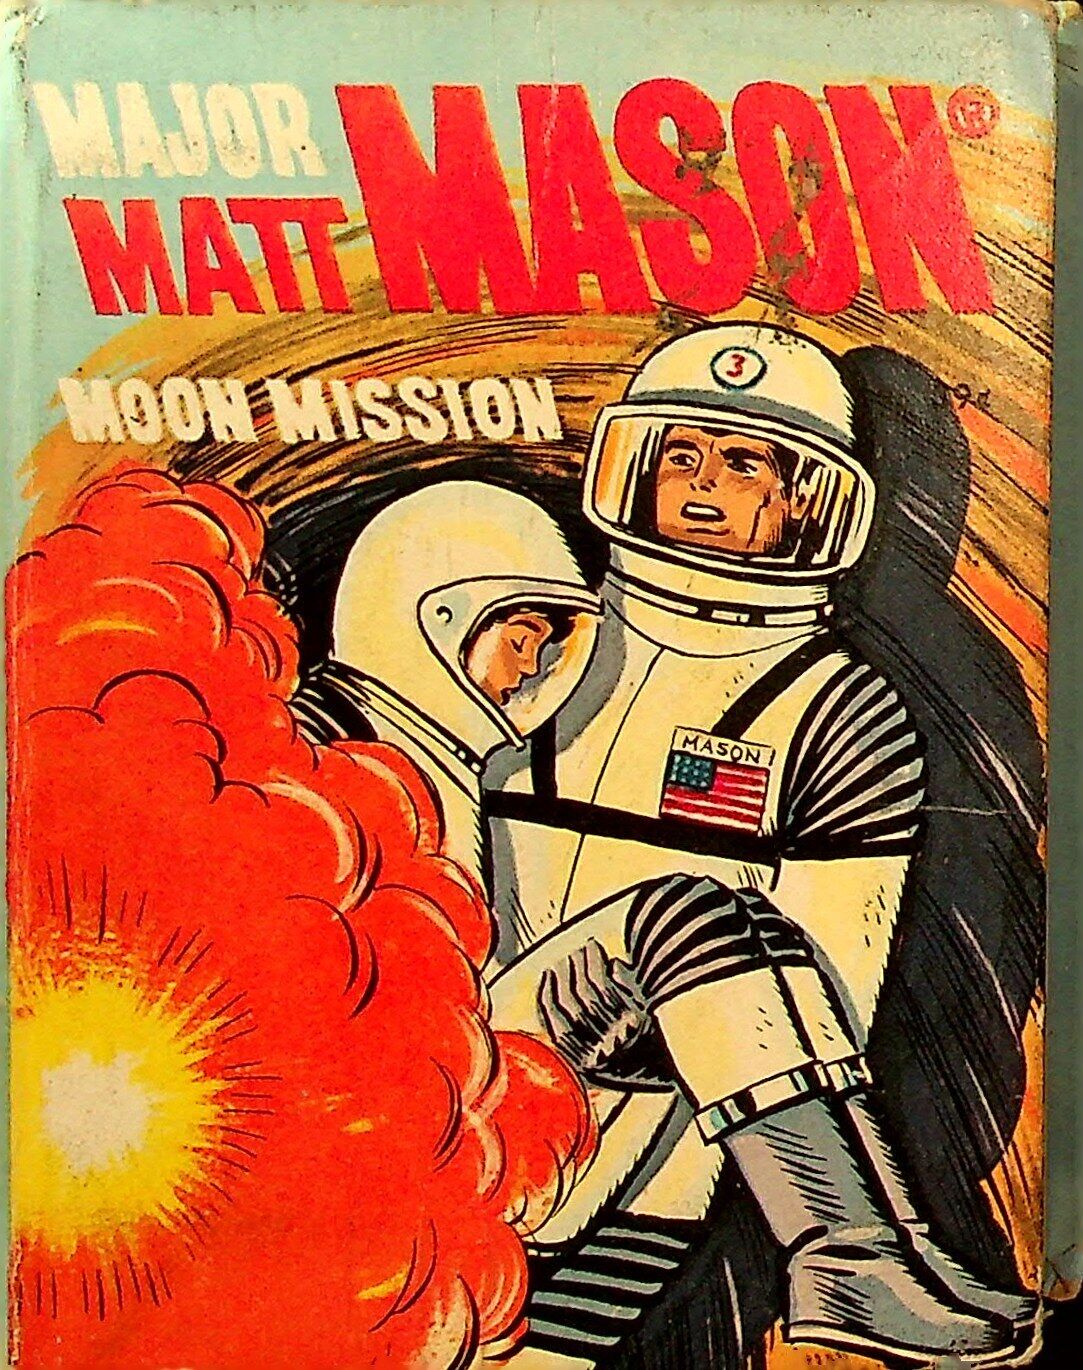 Major Matt Mason Moon Mission 2022 FN 1968